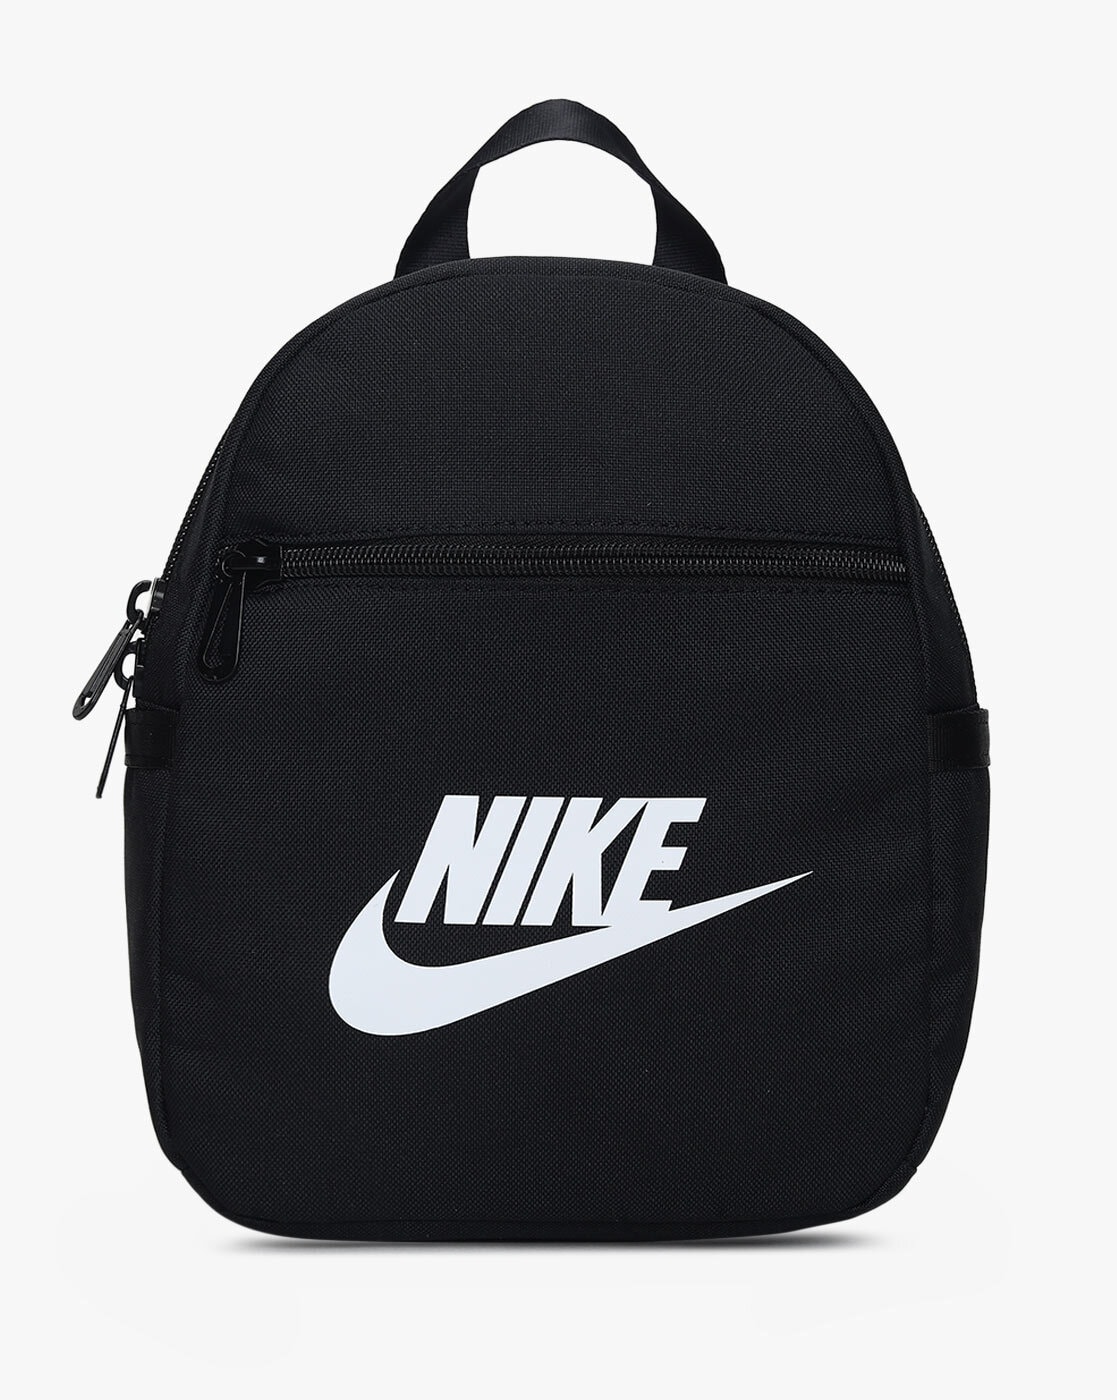 Buy Nike Backpacks for sale online | lazada.com.ph